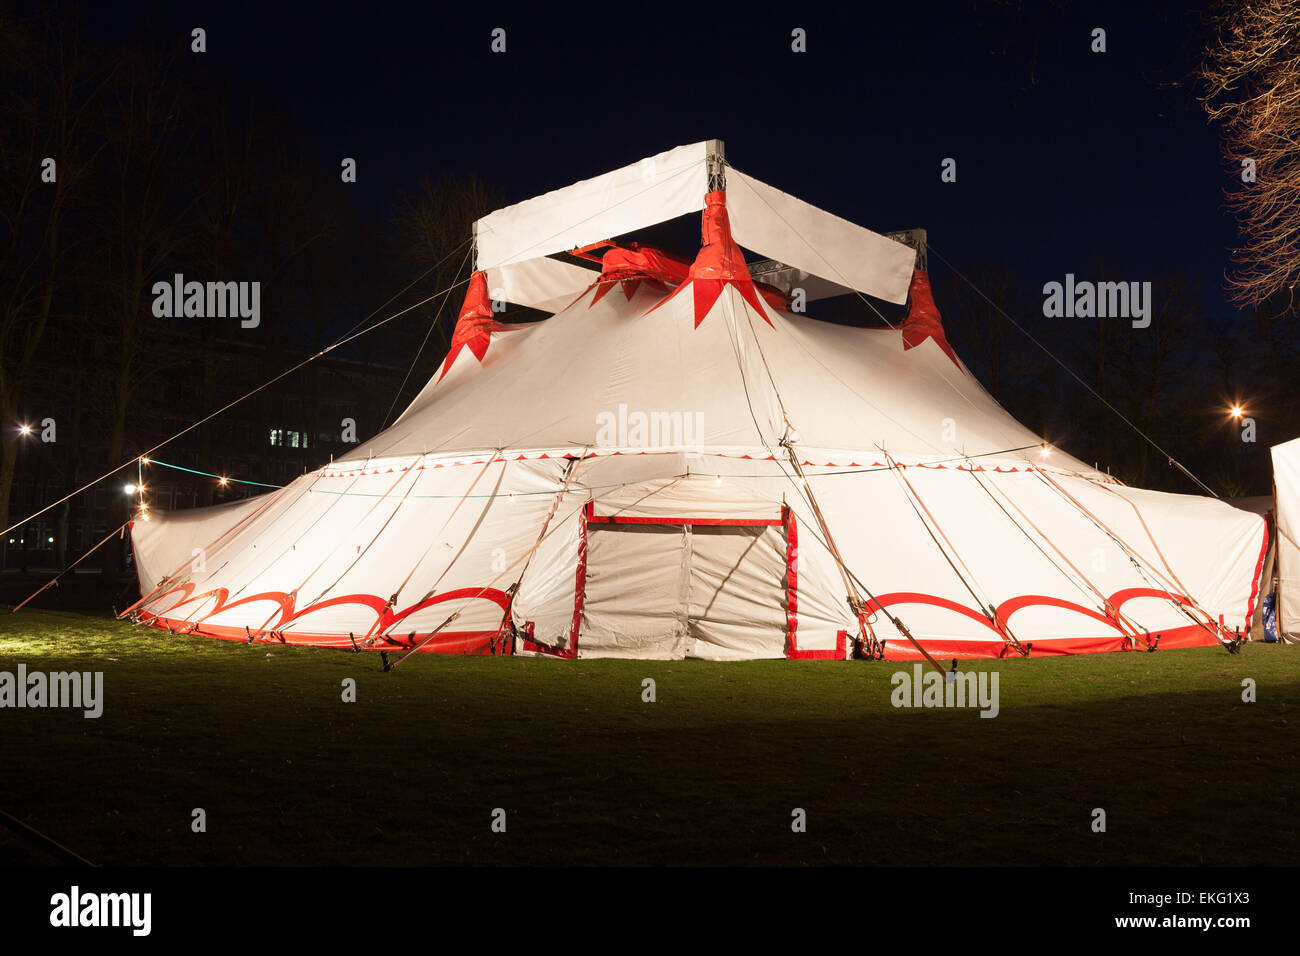 Big top circus tent Illuminated at night Stock Photo